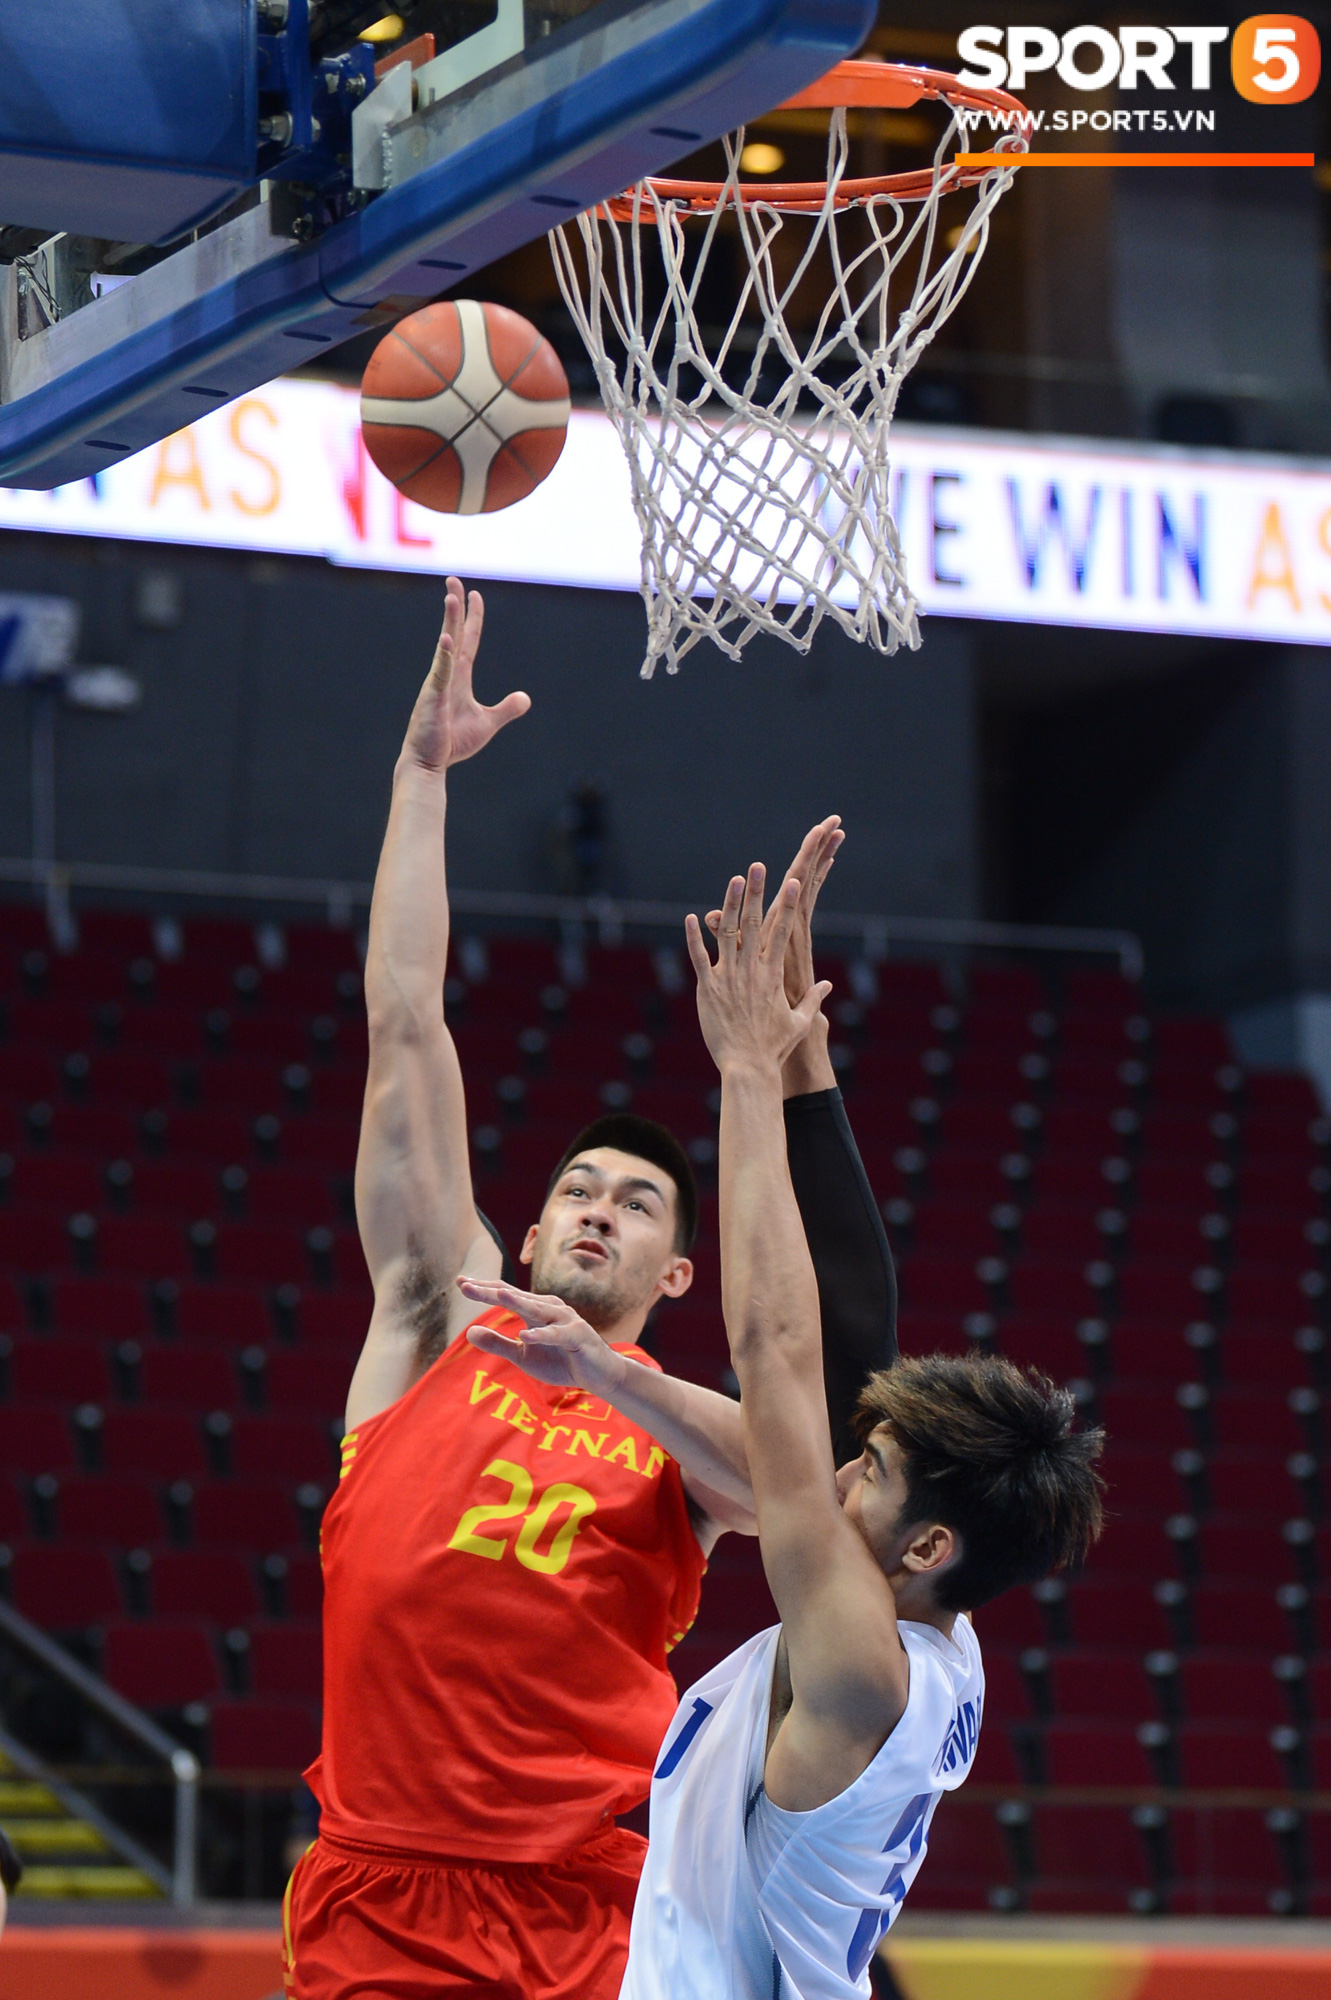 Tan giấc mộng vàng ở SEA Games 30, tuyển bóng rổ Việt Nam hướng tới tấm huy chương đồng thứ 2 - Ảnh 4.